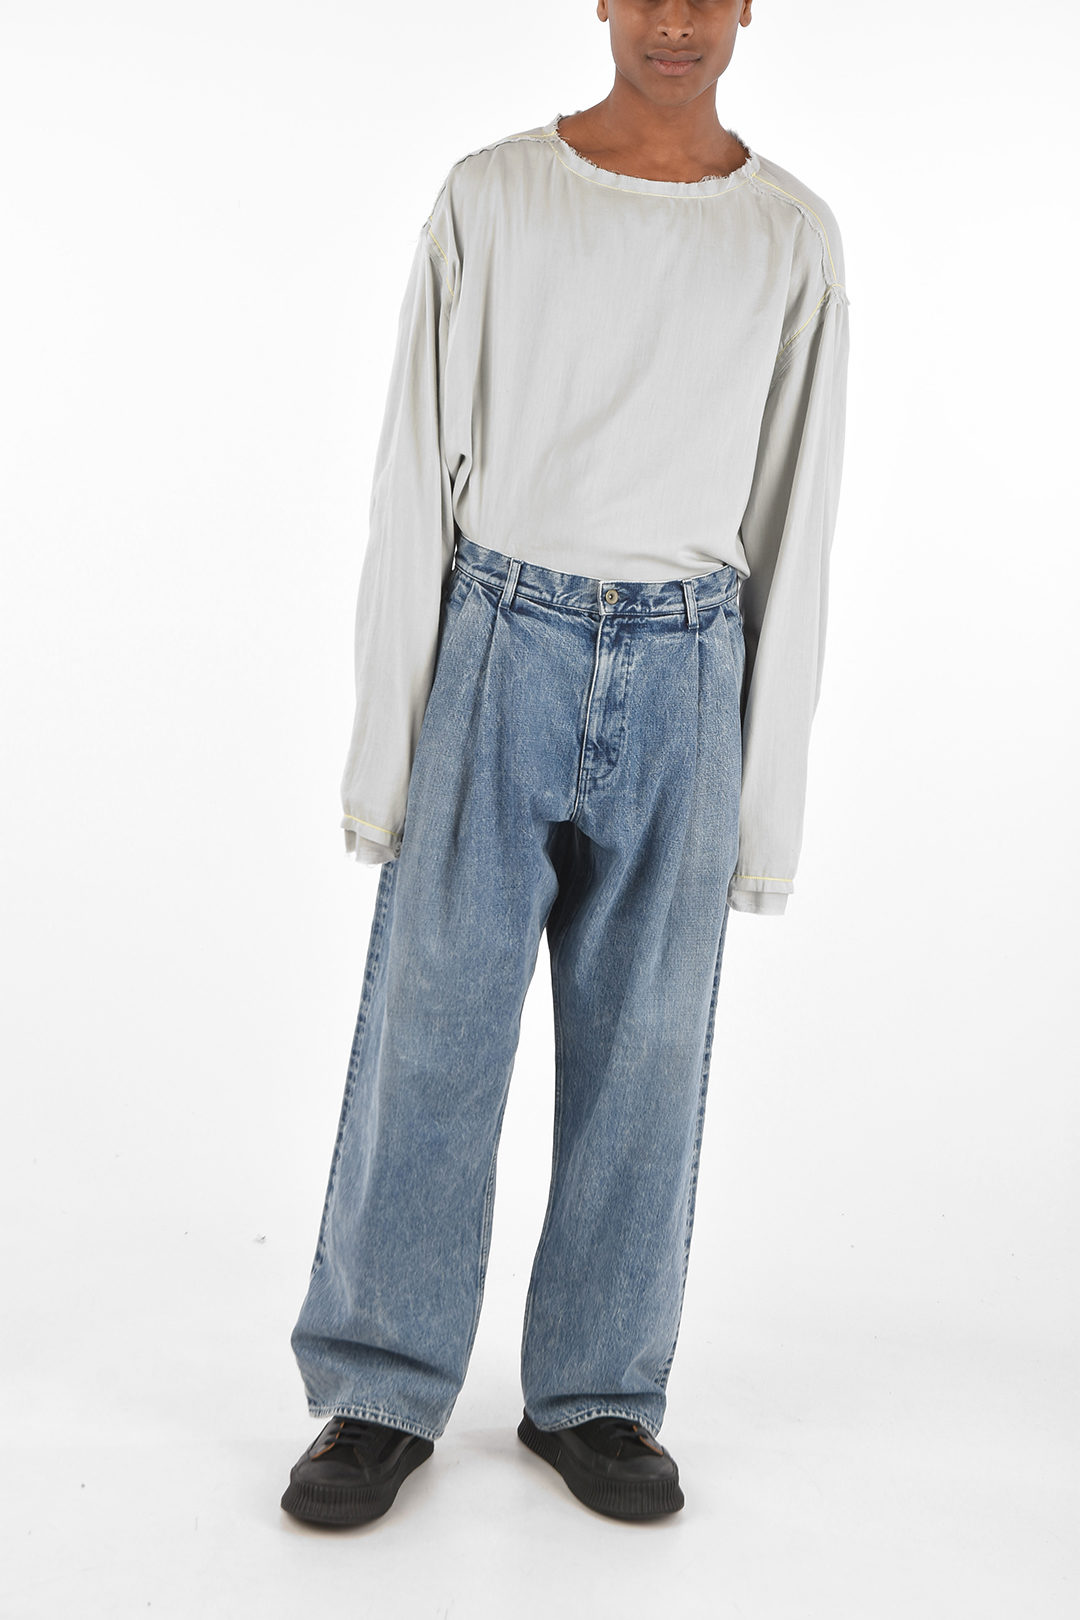 NICK FOUQUET 28cm double pleat wide jeans